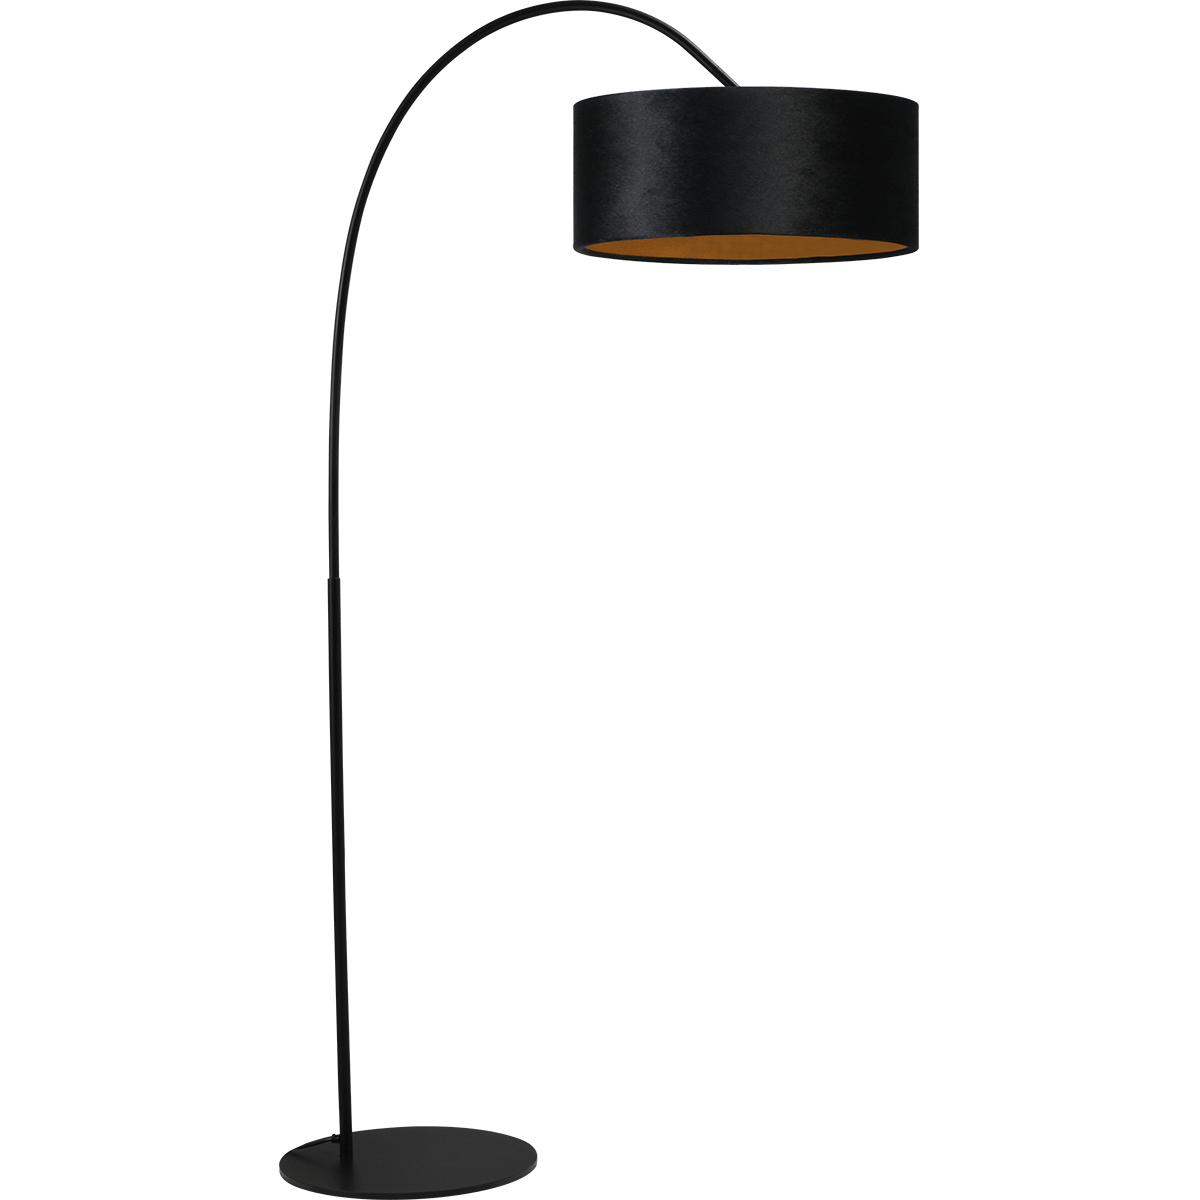 Vloerlamp Arch black - mat zwart - hoogte 183 cm - breedte 88 cm inclusief zwarte lampenkap - Artik black 52/52/25 cm - uit/aan schakelaar - MASTERLIGHT